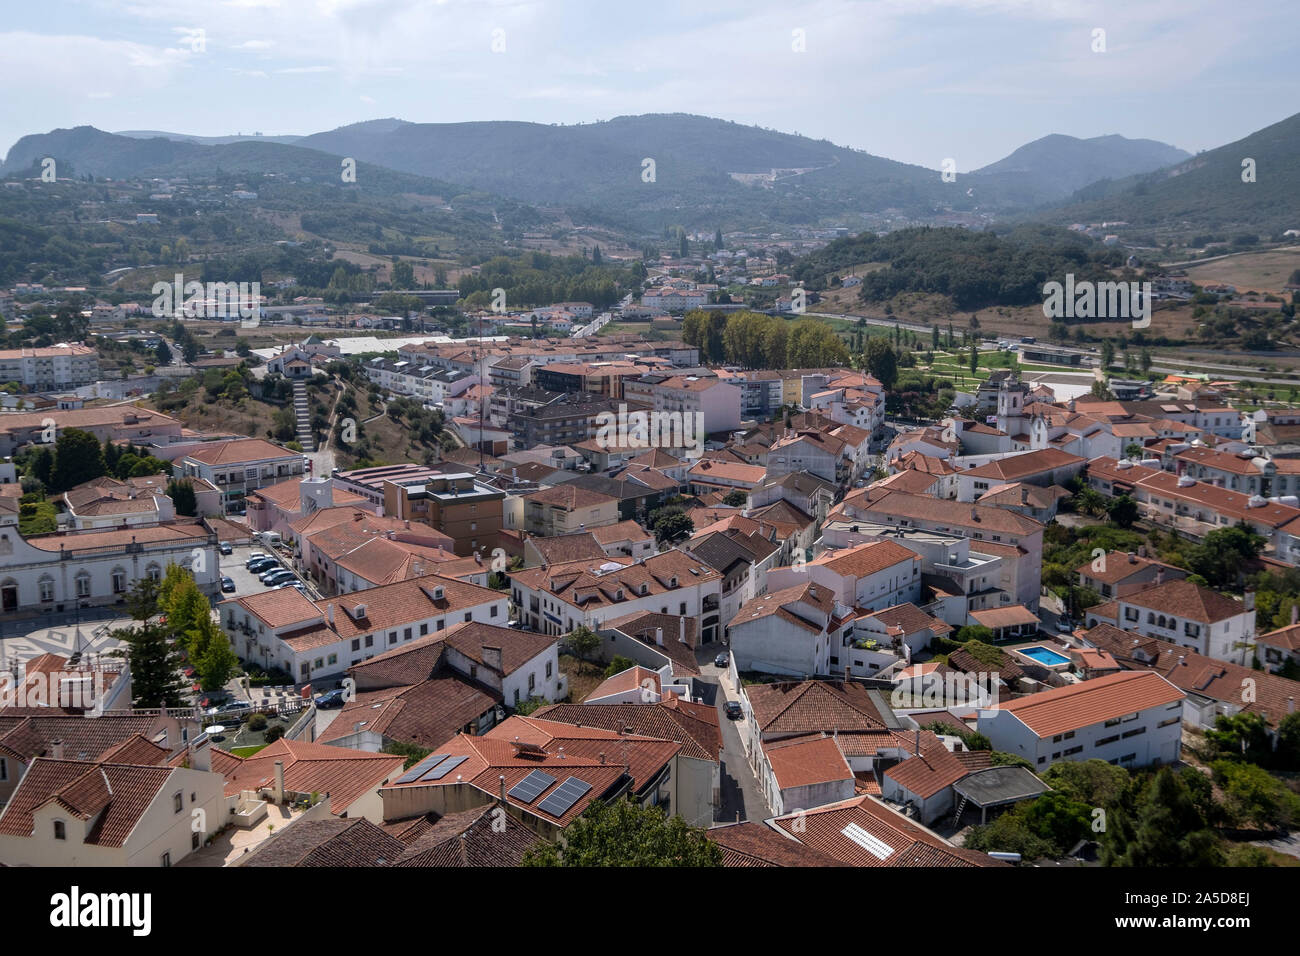 Aerial view of Porto de Mós, Portugal, Europe Stock Photo